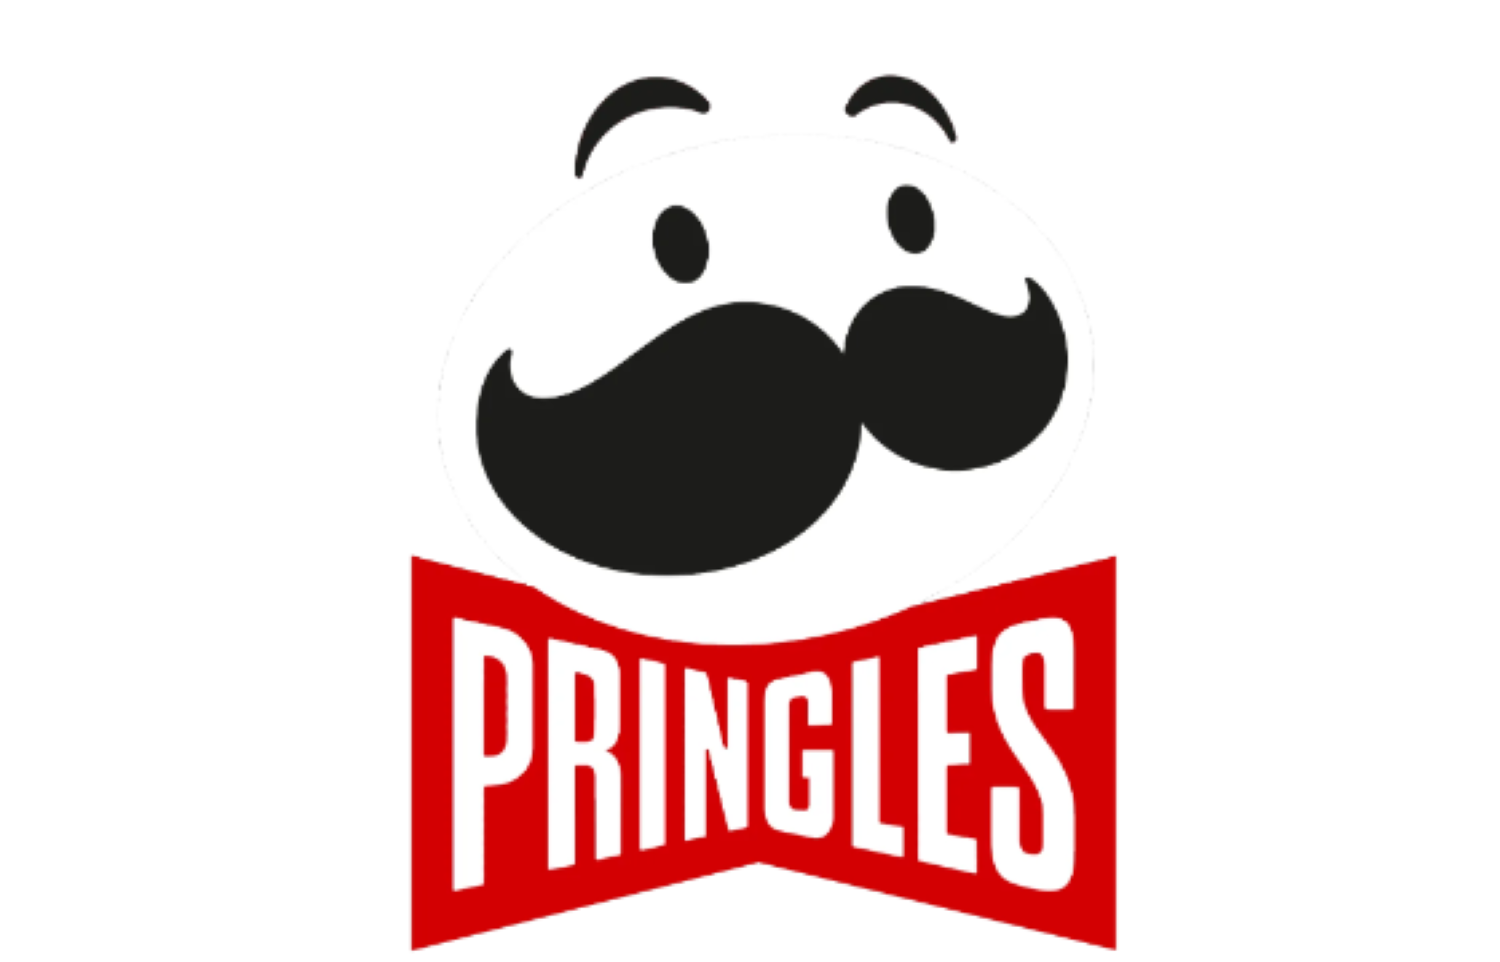 Gezeigt ist das Logo der Marke Pringles.